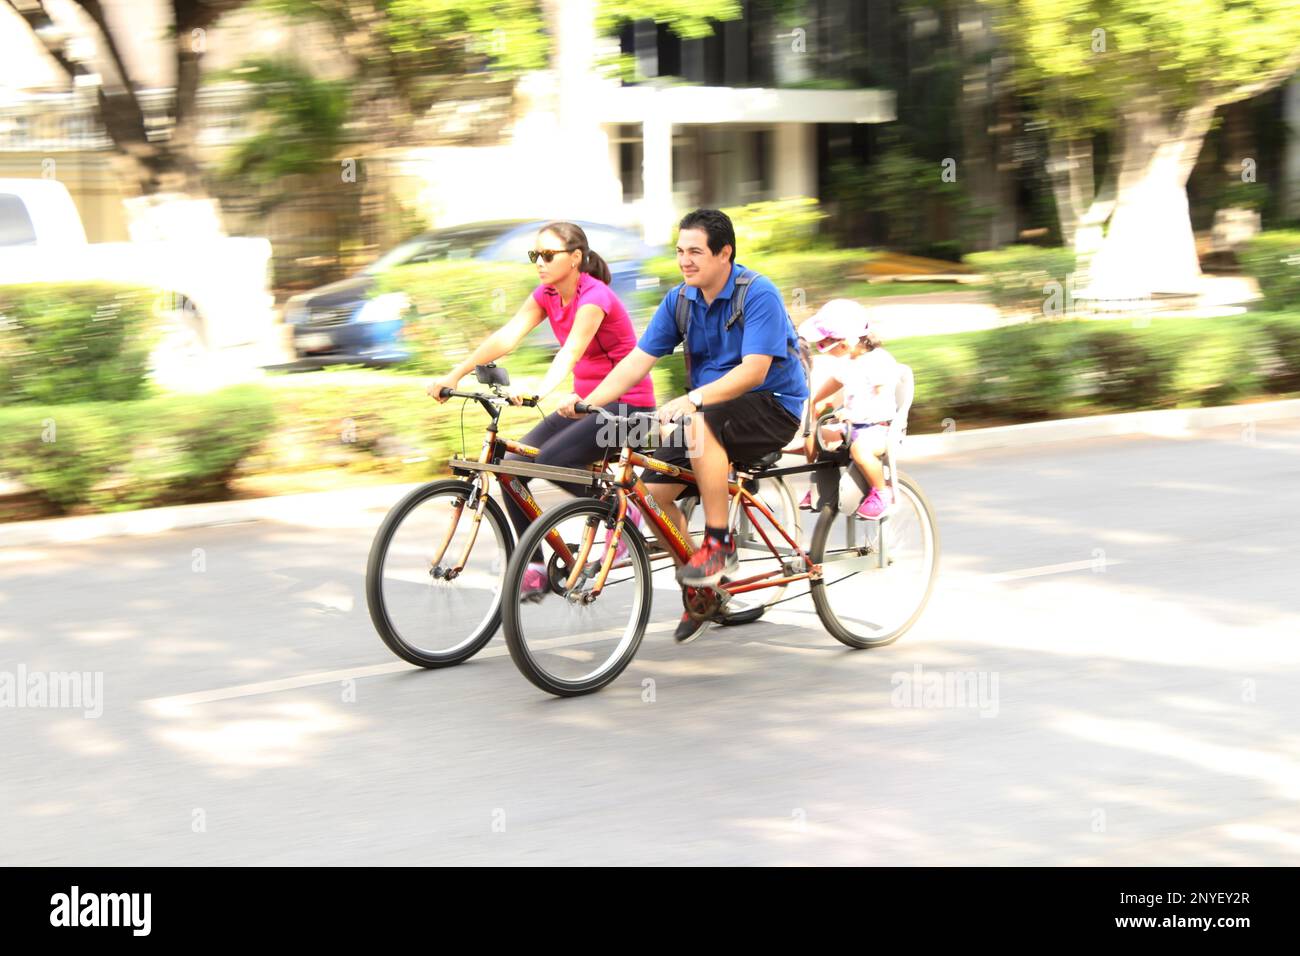 MERIDA, MEXIKO - 9. OKTOBER 2016 Radfahren am Sonntag auf dem Paseo de Montejo - Familie mit roten und blauen Hemden auf dem Quad Stockfoto